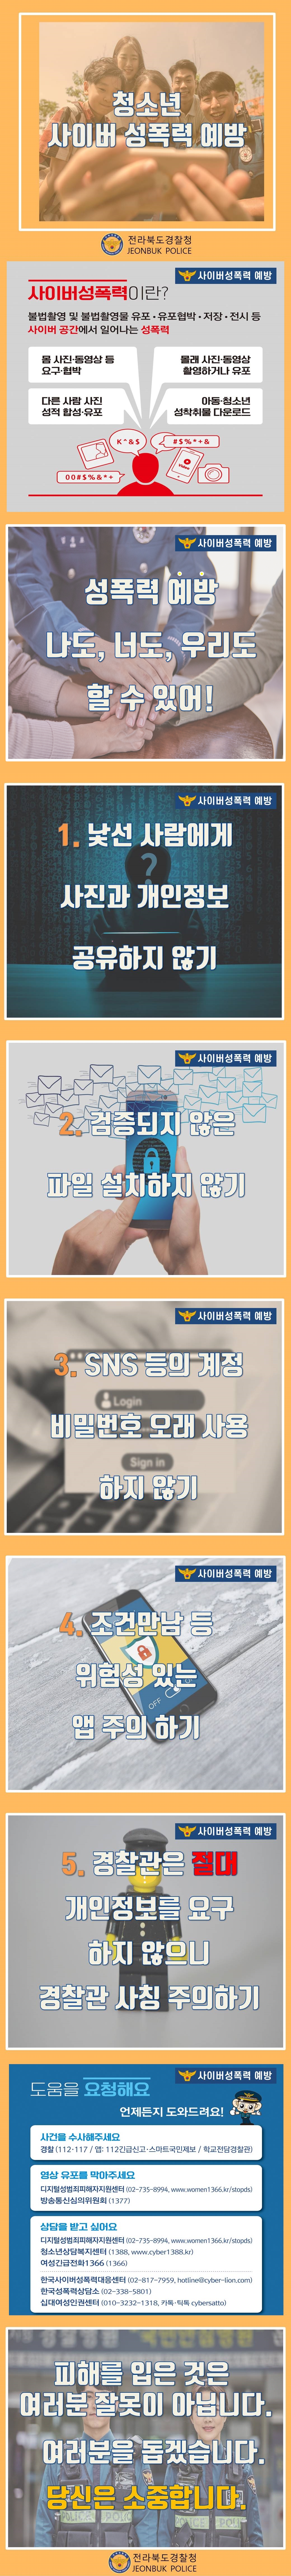 청소년 사이버 성폭력 예방 카드뉴스 게시용